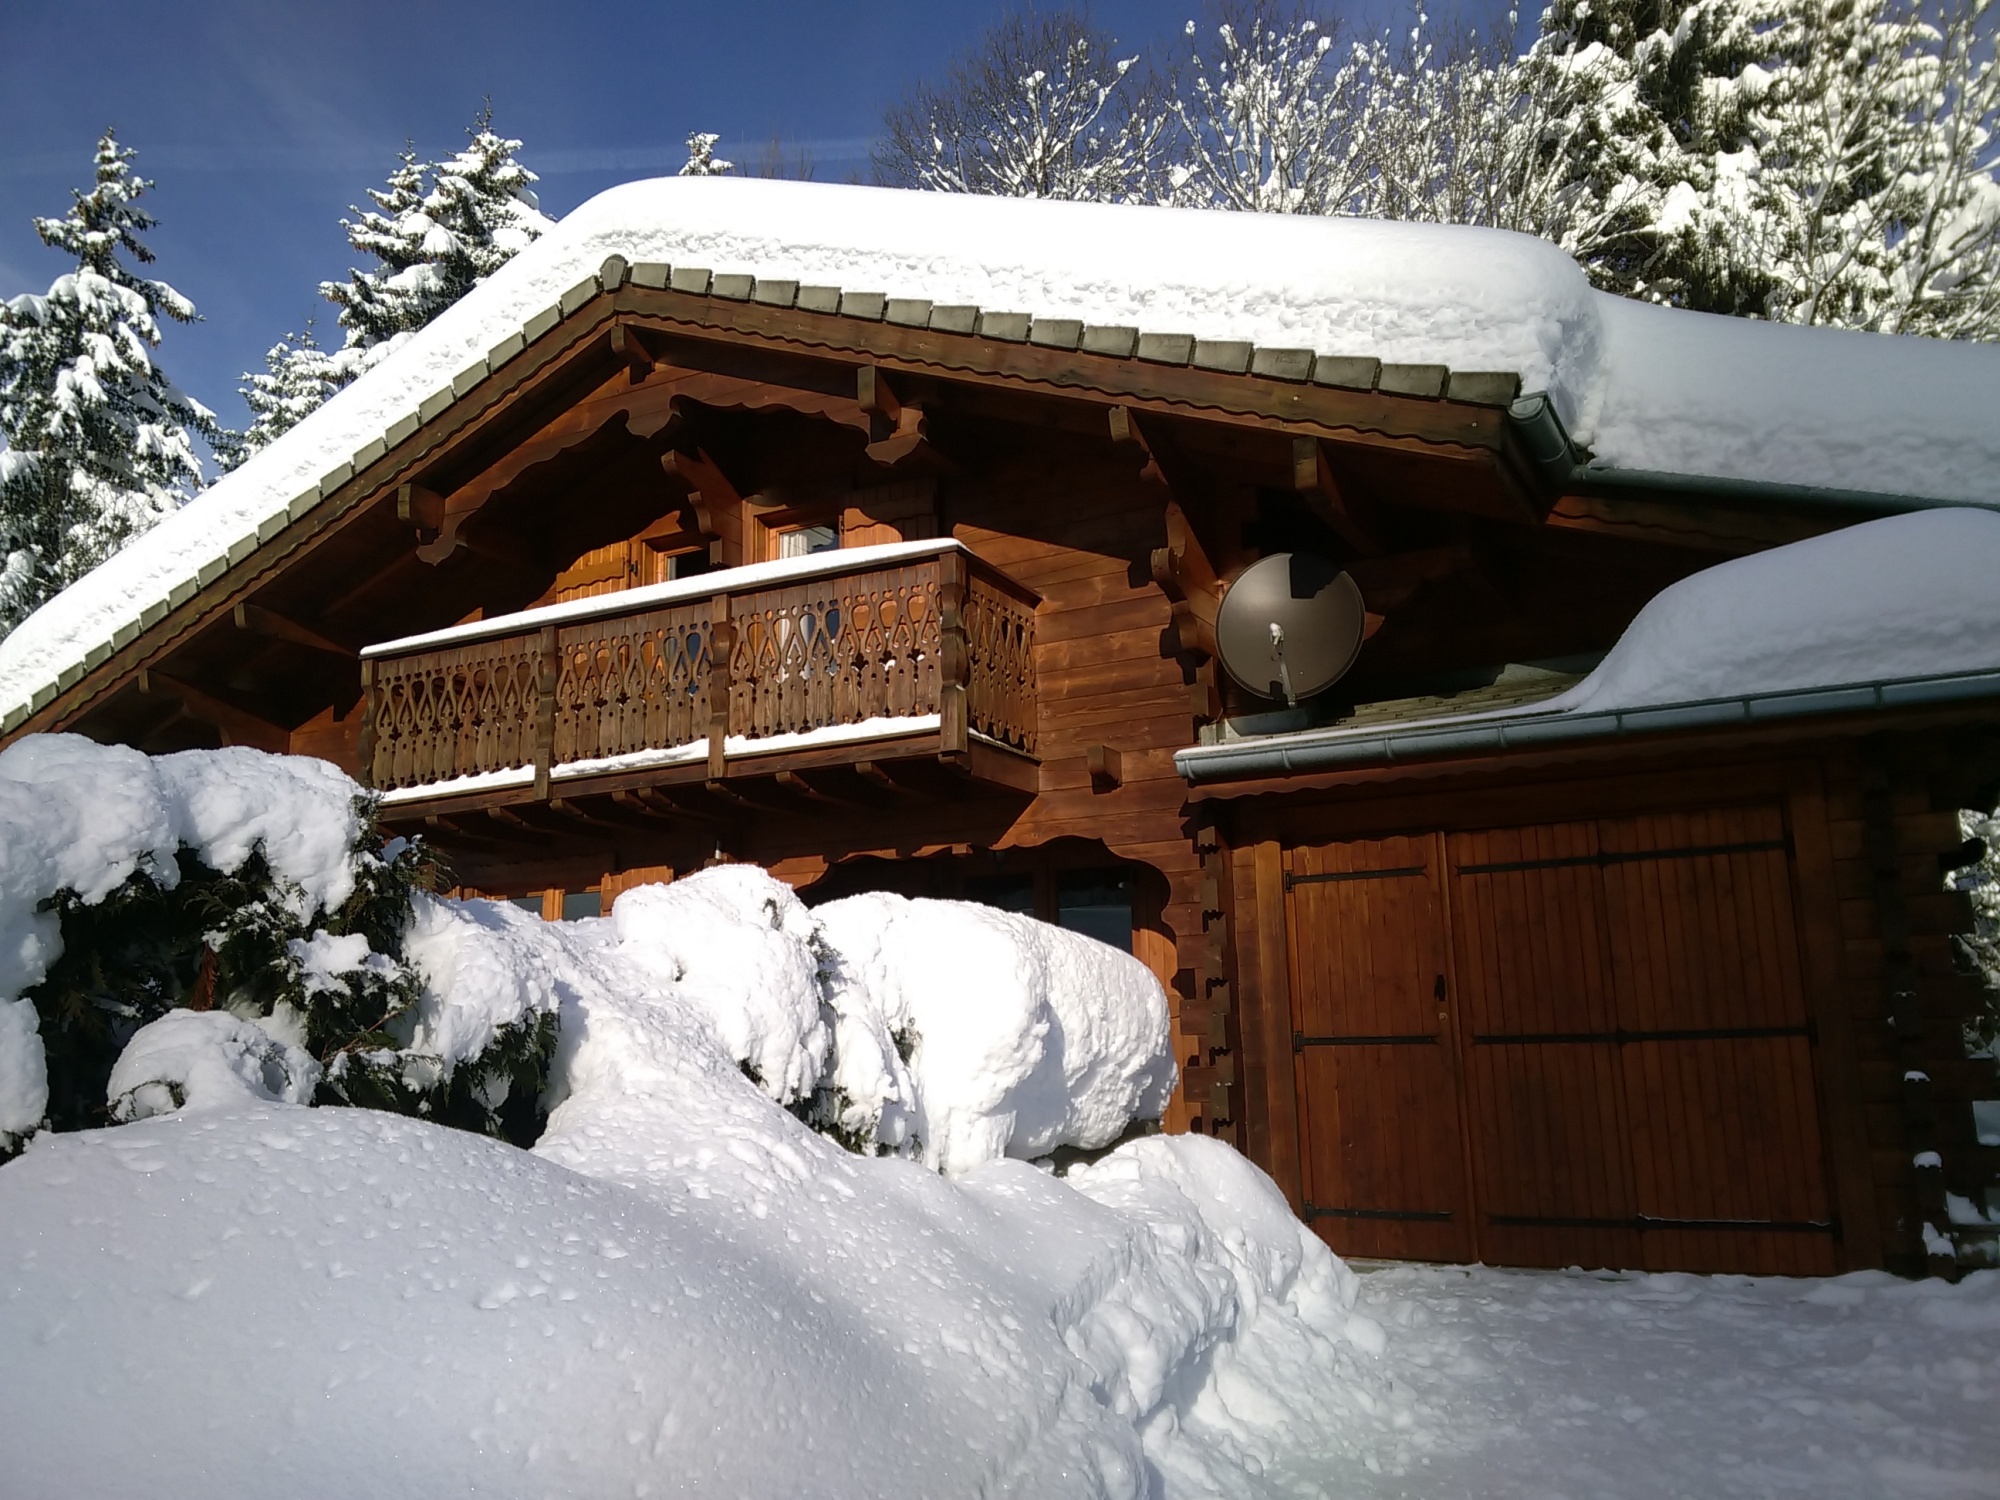 For rent: Chalet des Amies – Les Gets Ski Paradise